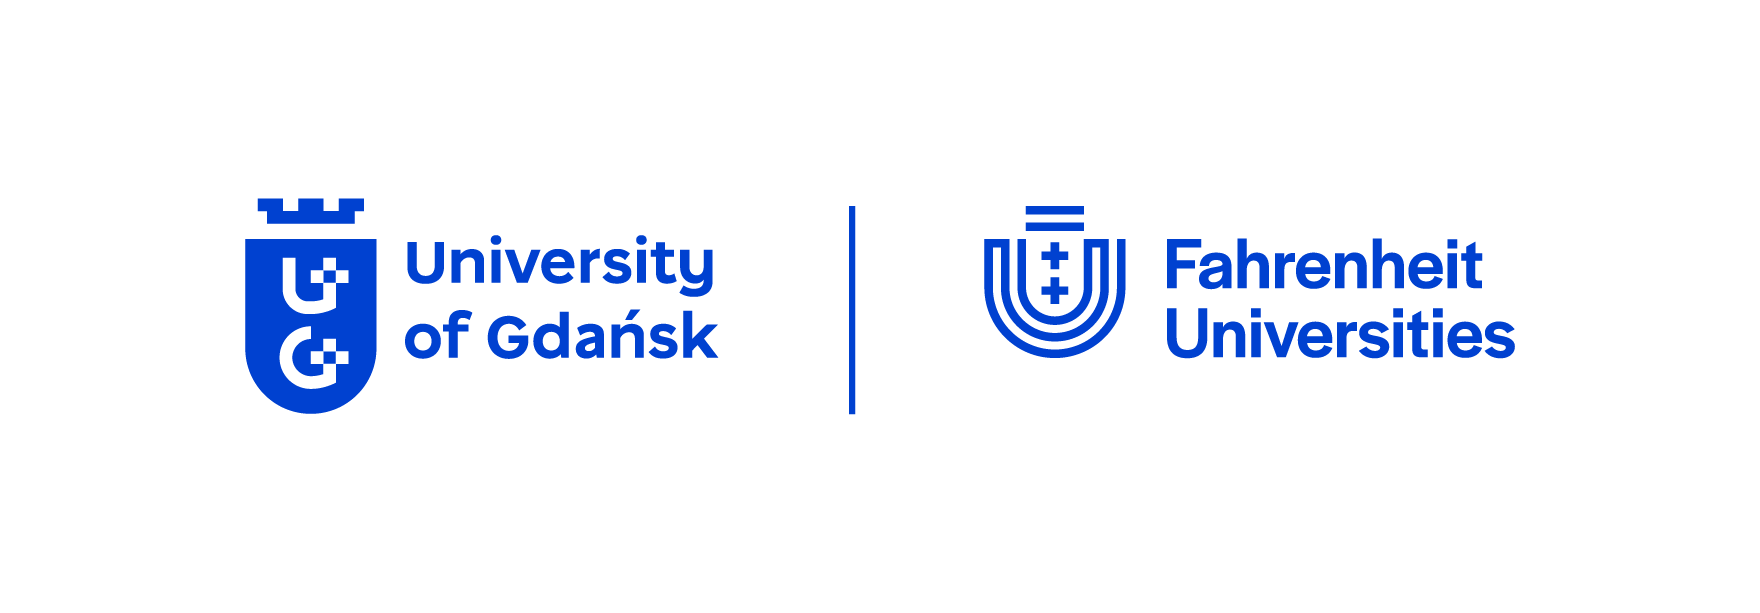 Logotyp Uniwersytet Gdański oraz Logotyp Związek Uczelni Fahrenheita